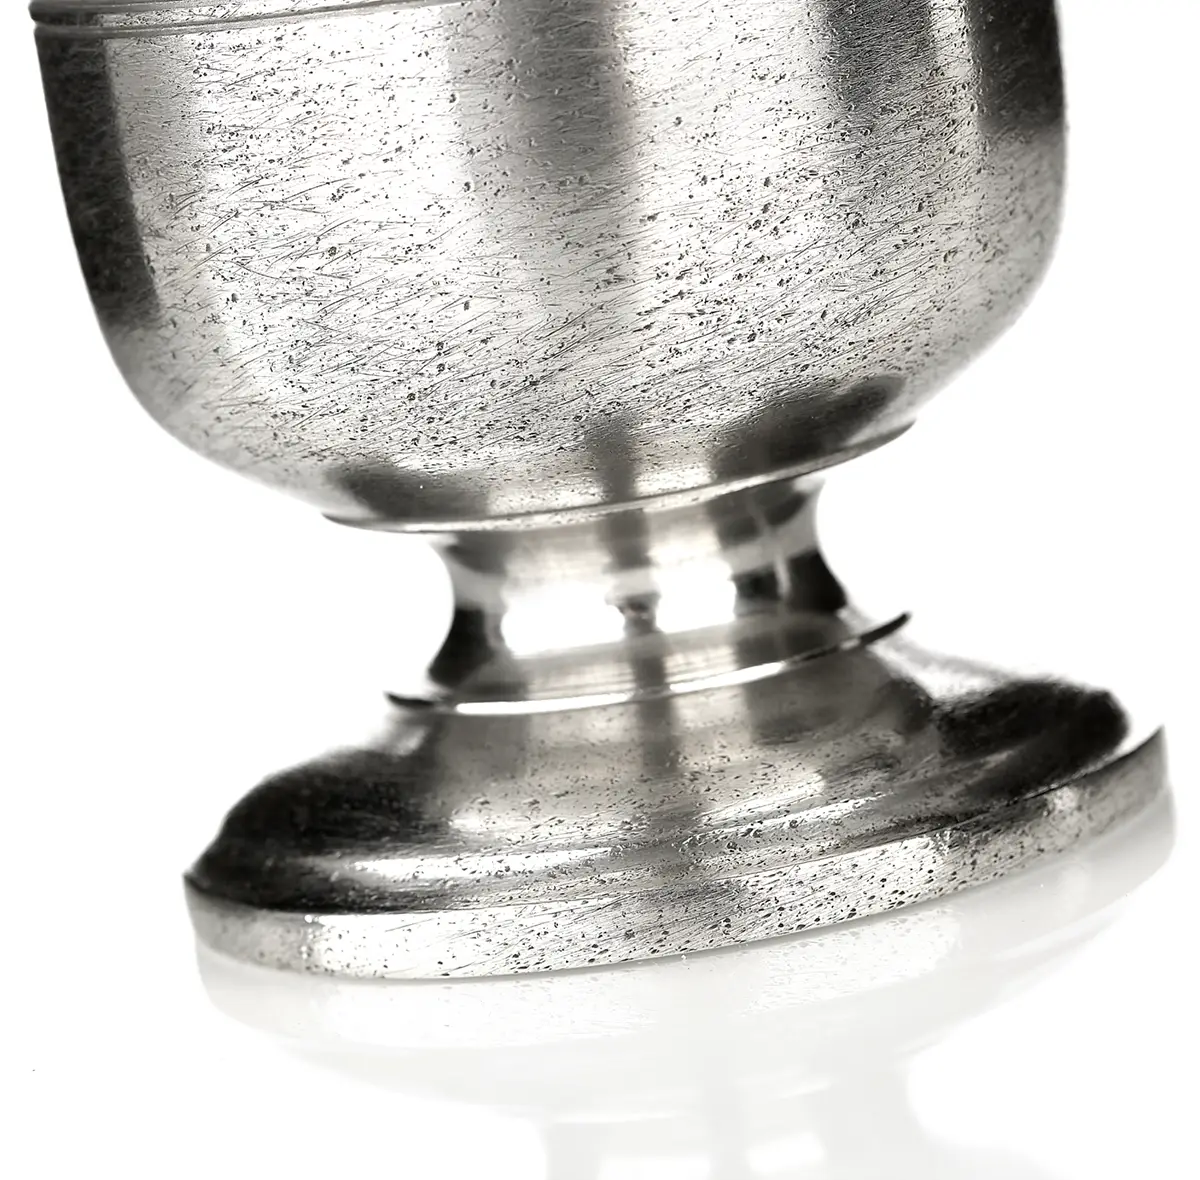 Tudor Goblet - 1 Pint  Mittelalter Weinkelch aus England - Zinn poliert